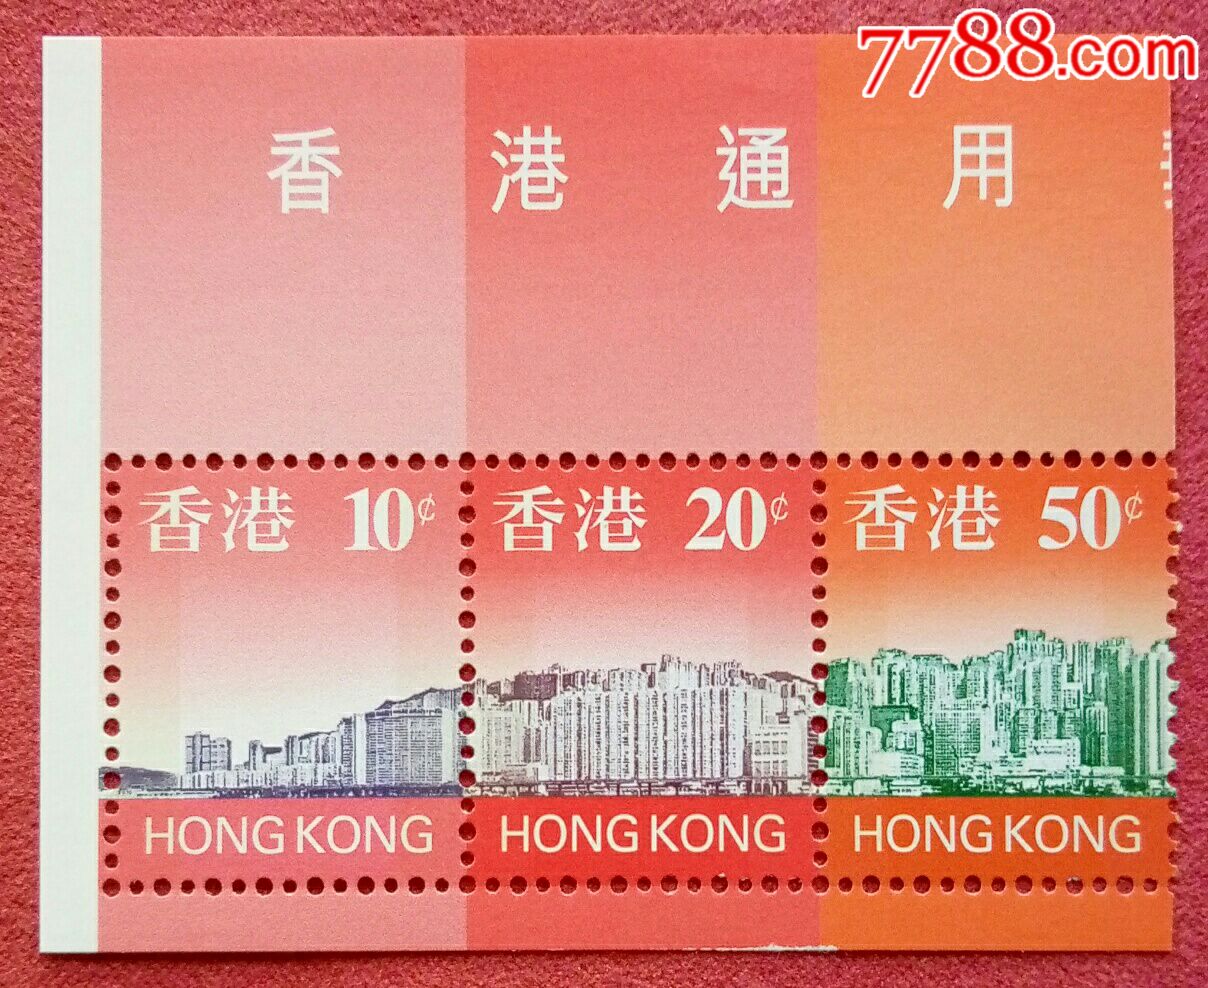 1999年邮票收藏价格(1999年邮票价格查询表)_古玩帮